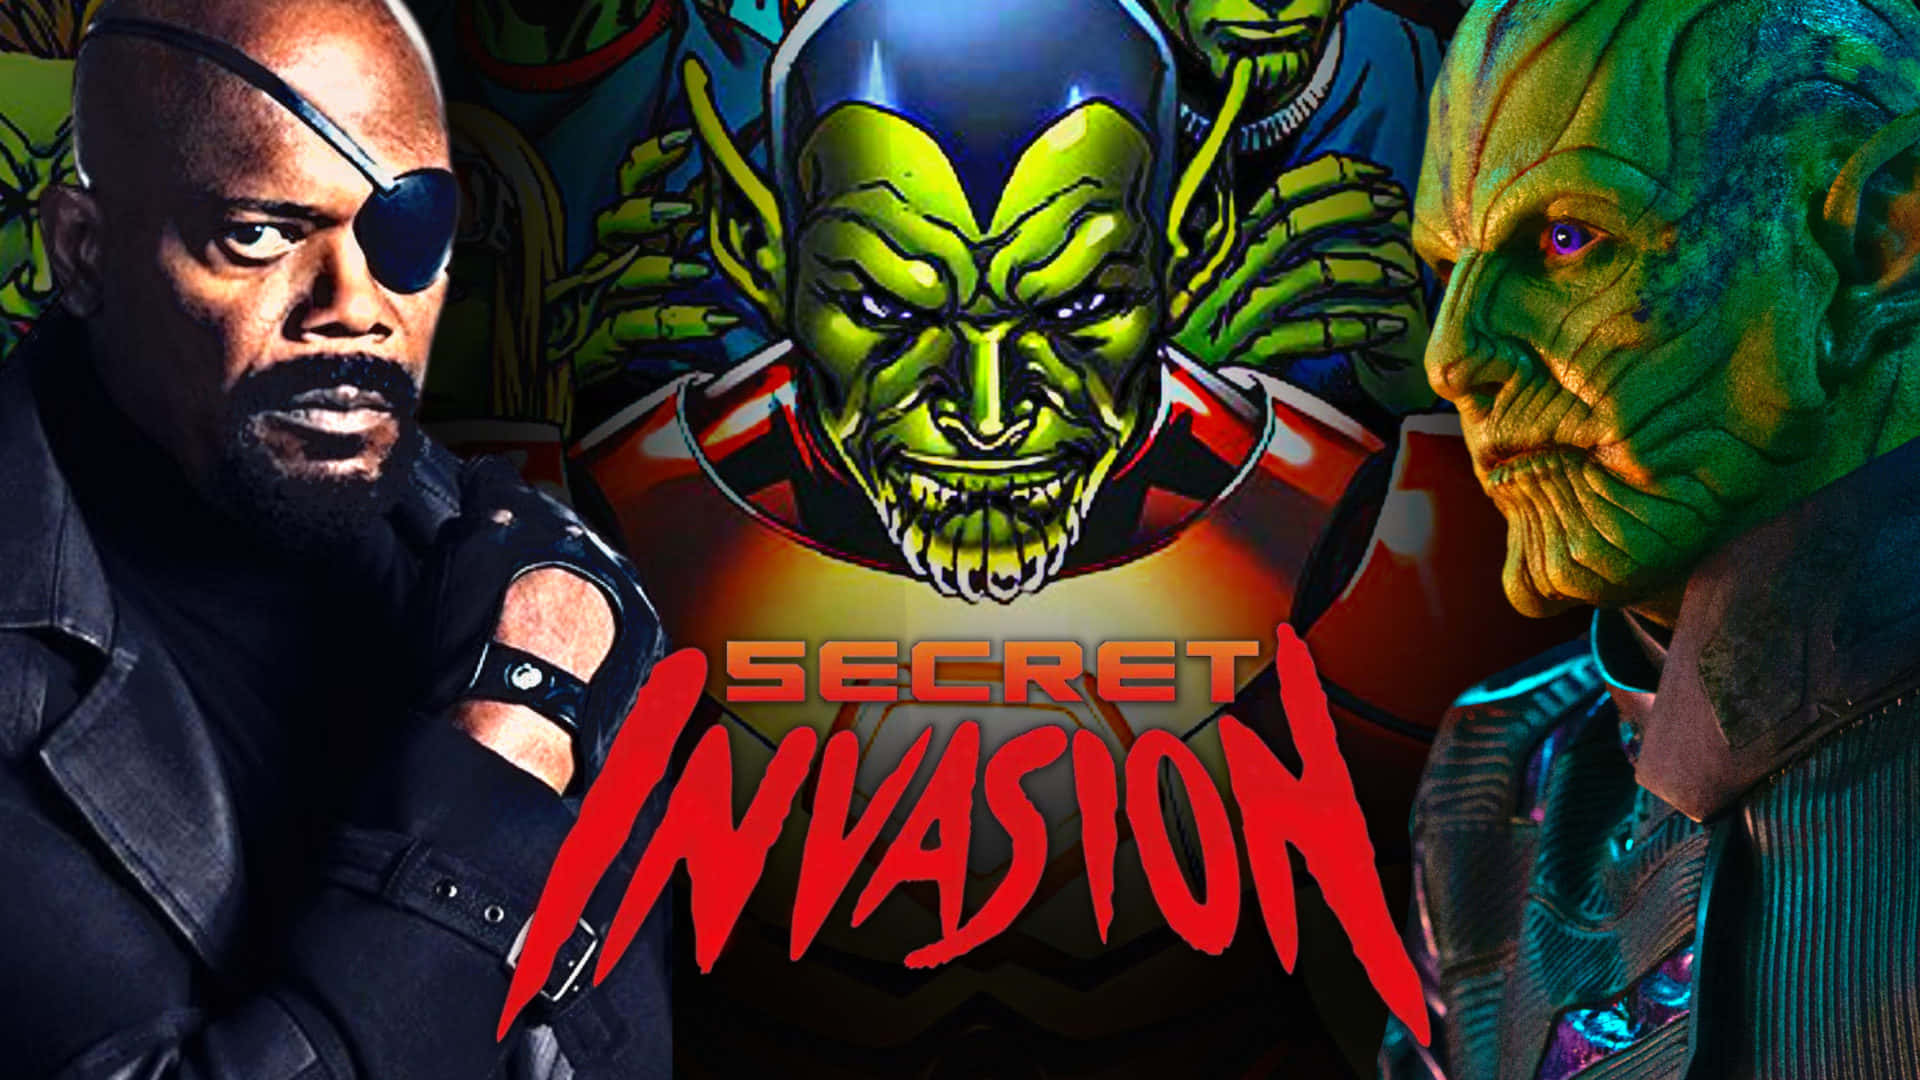 Marvel Secret Invasion Action Scene Wallpaper